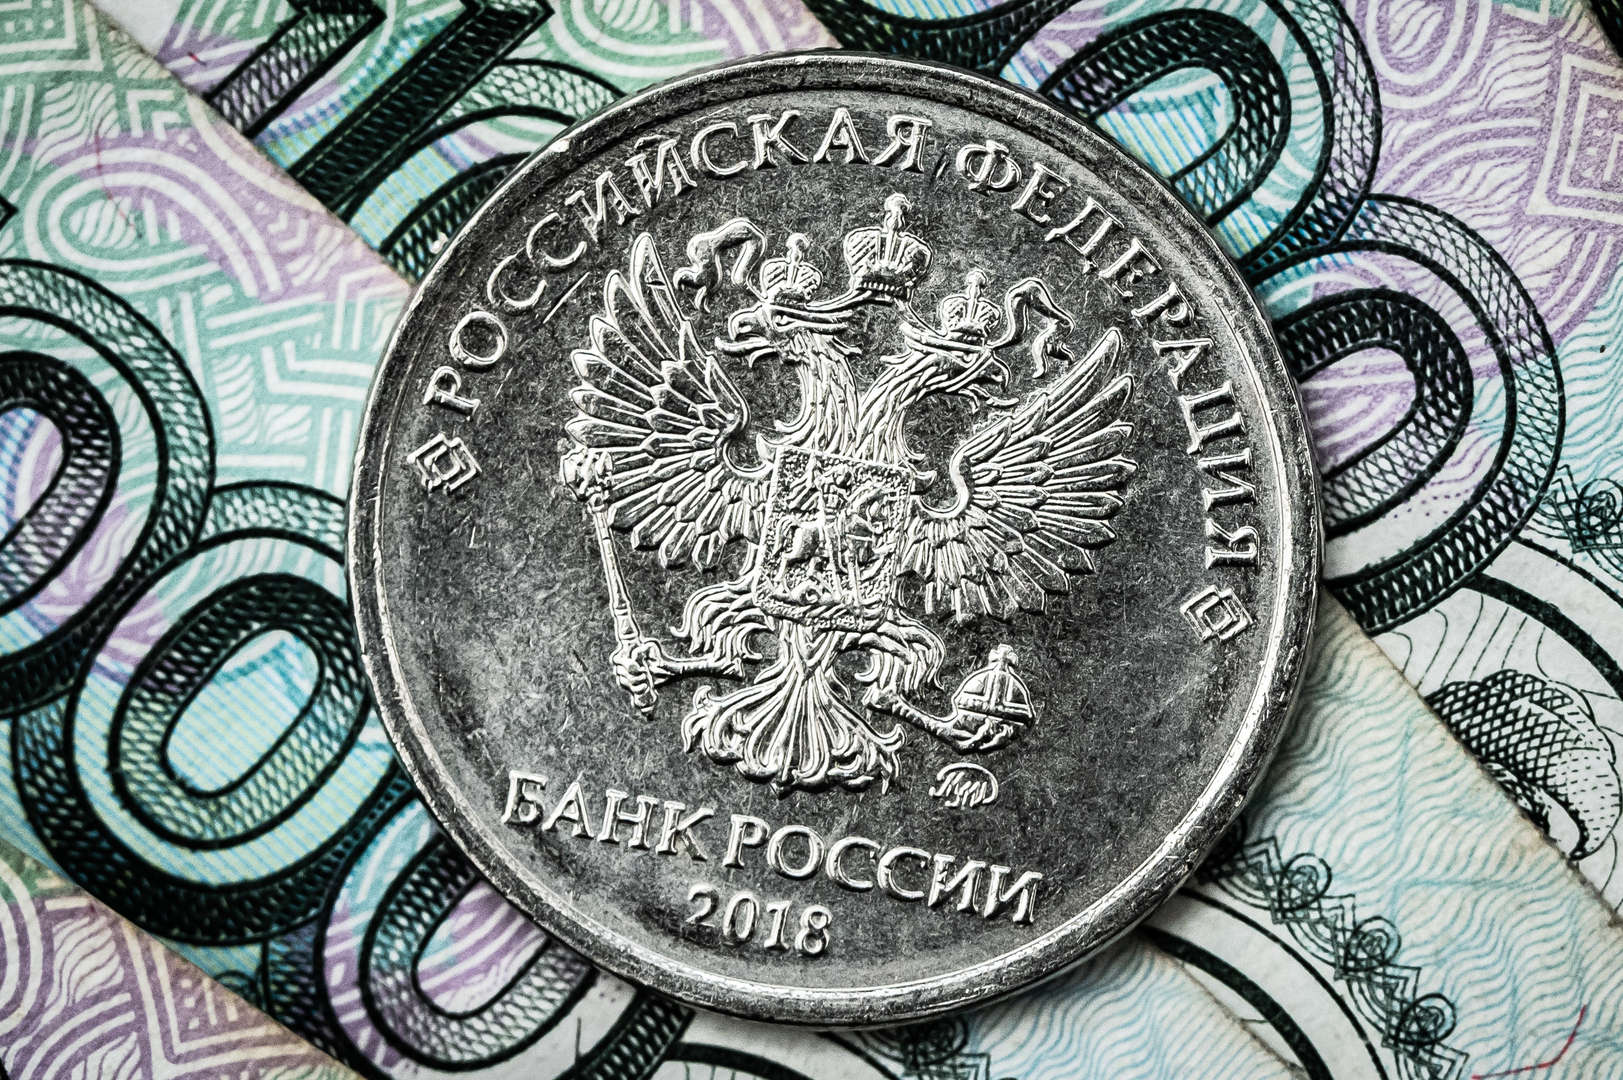 المركزي الروسي ينشر نماذج جديدة لأكبر فئتين من العملة الوطنية (صورة)